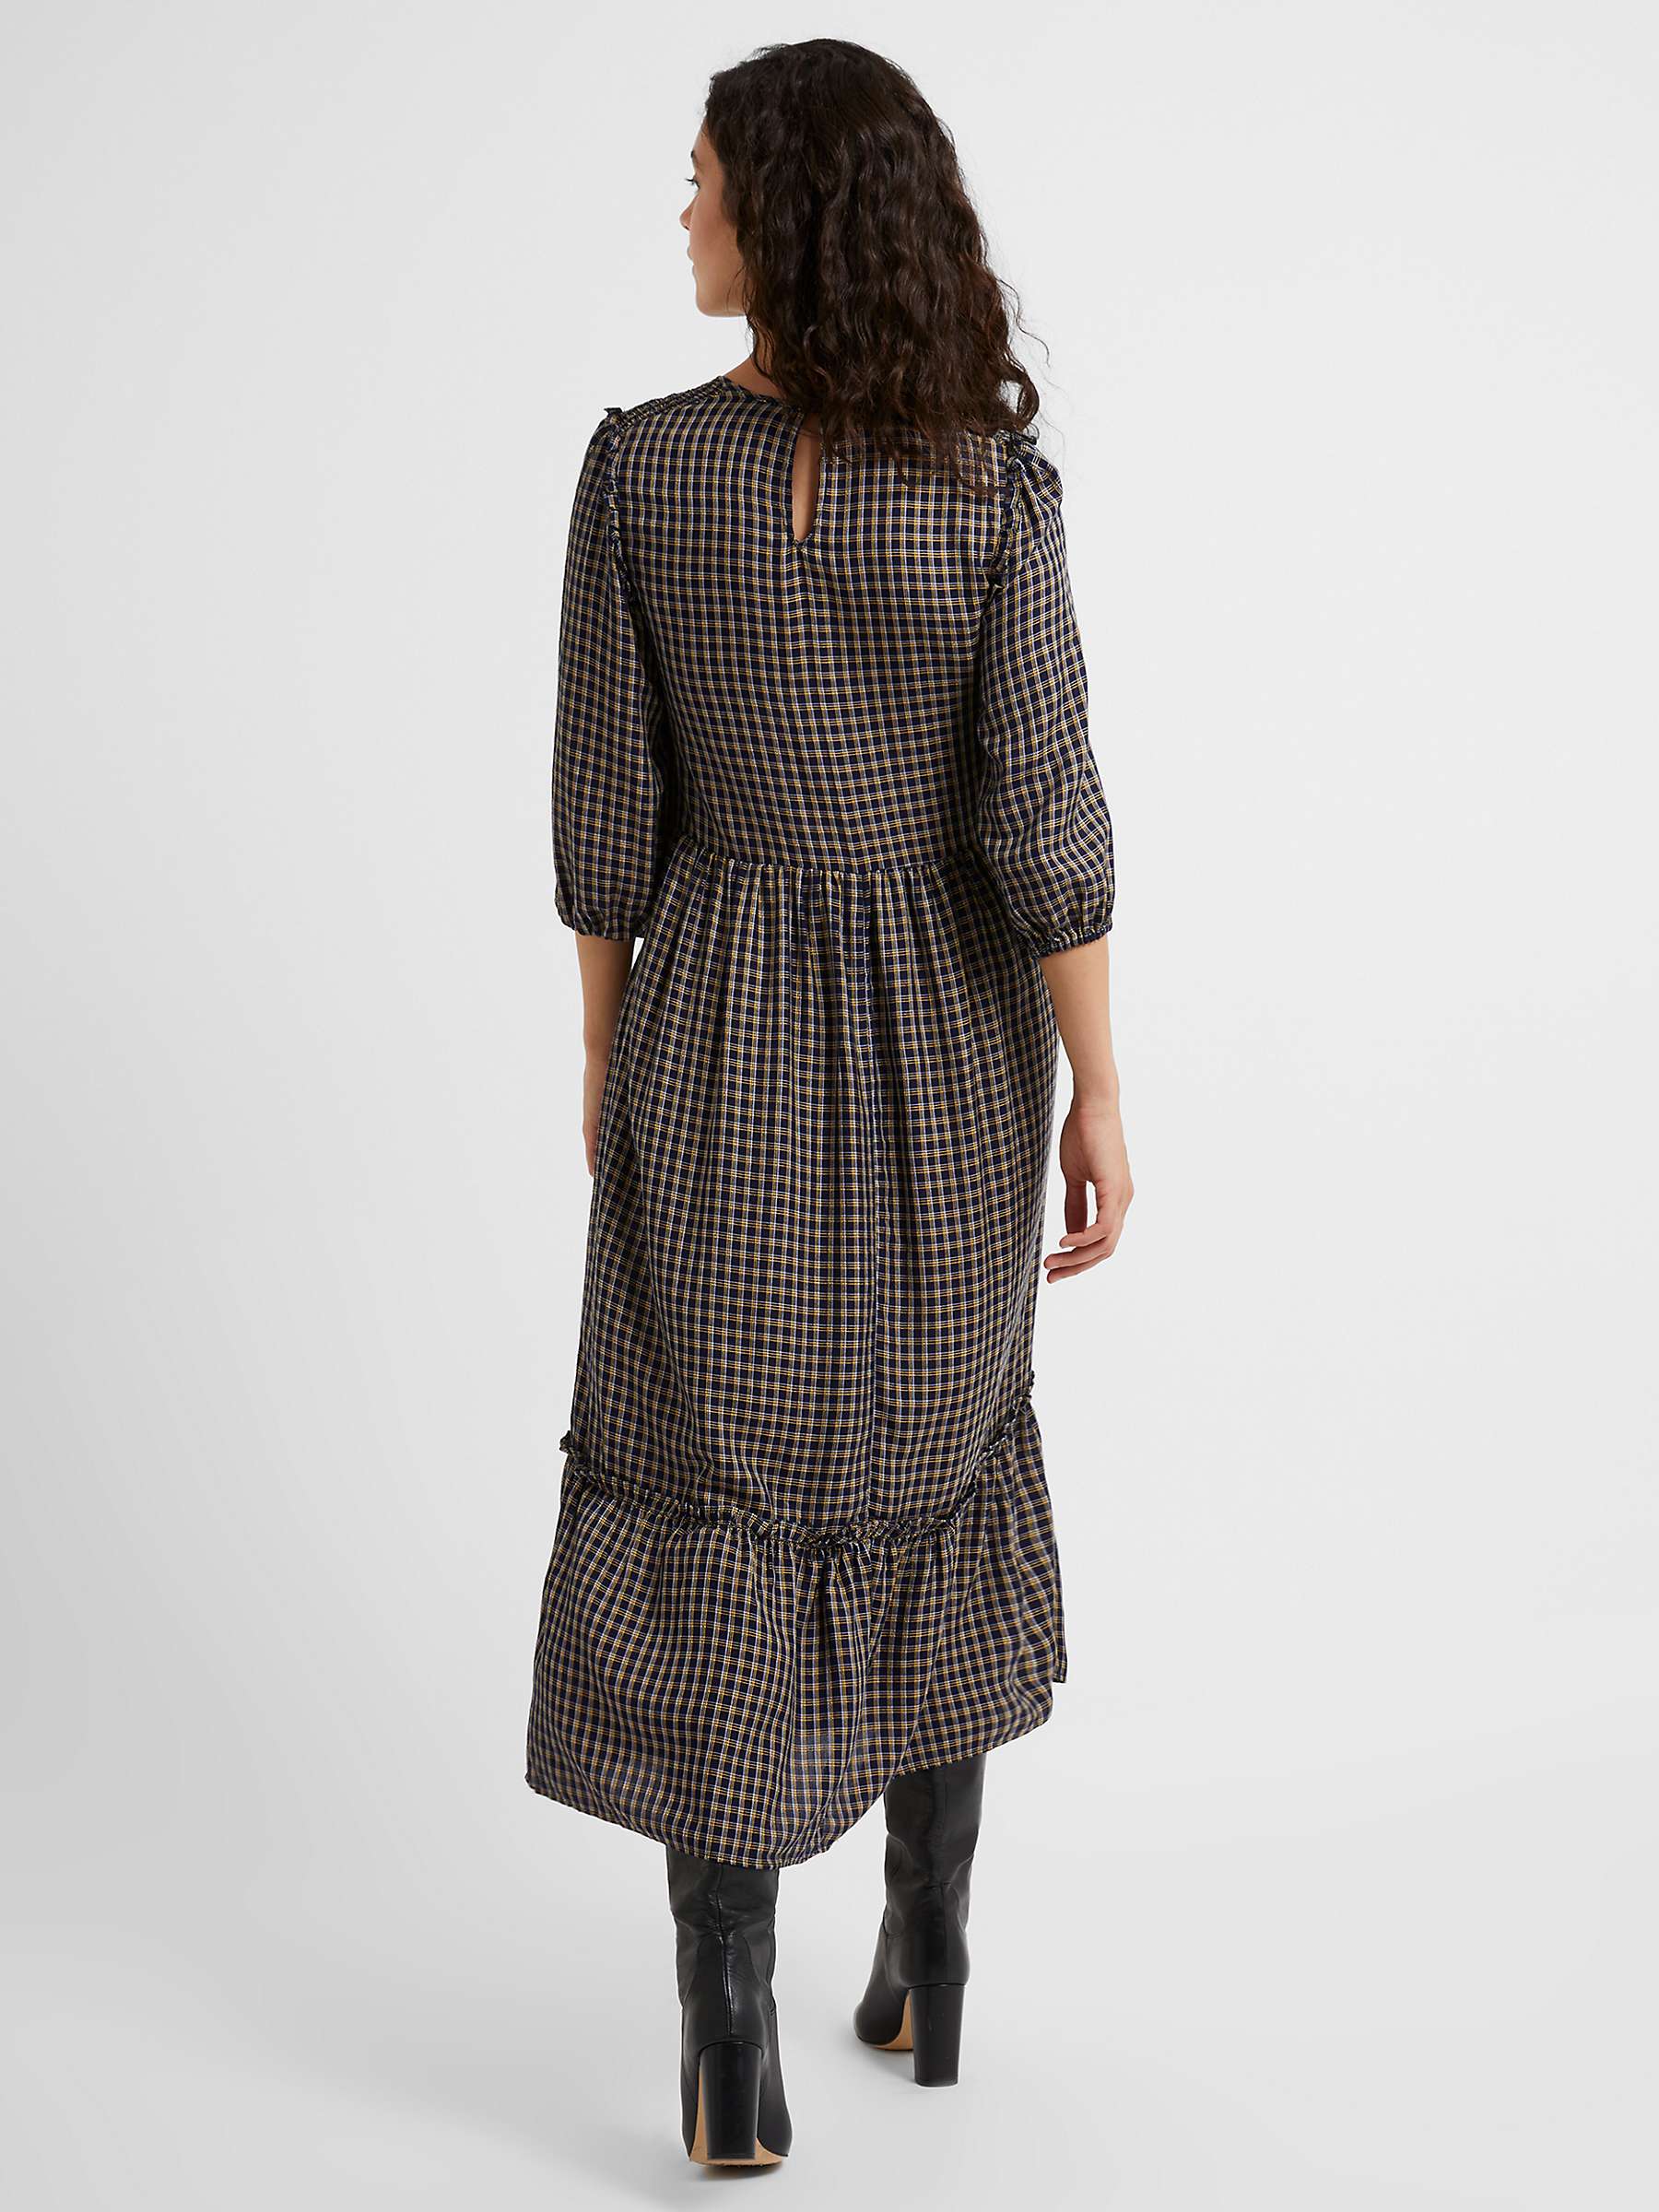 Buy Great Plains Soft Check V Neck Smocked Dress, Indigo Online at johnlewis.com